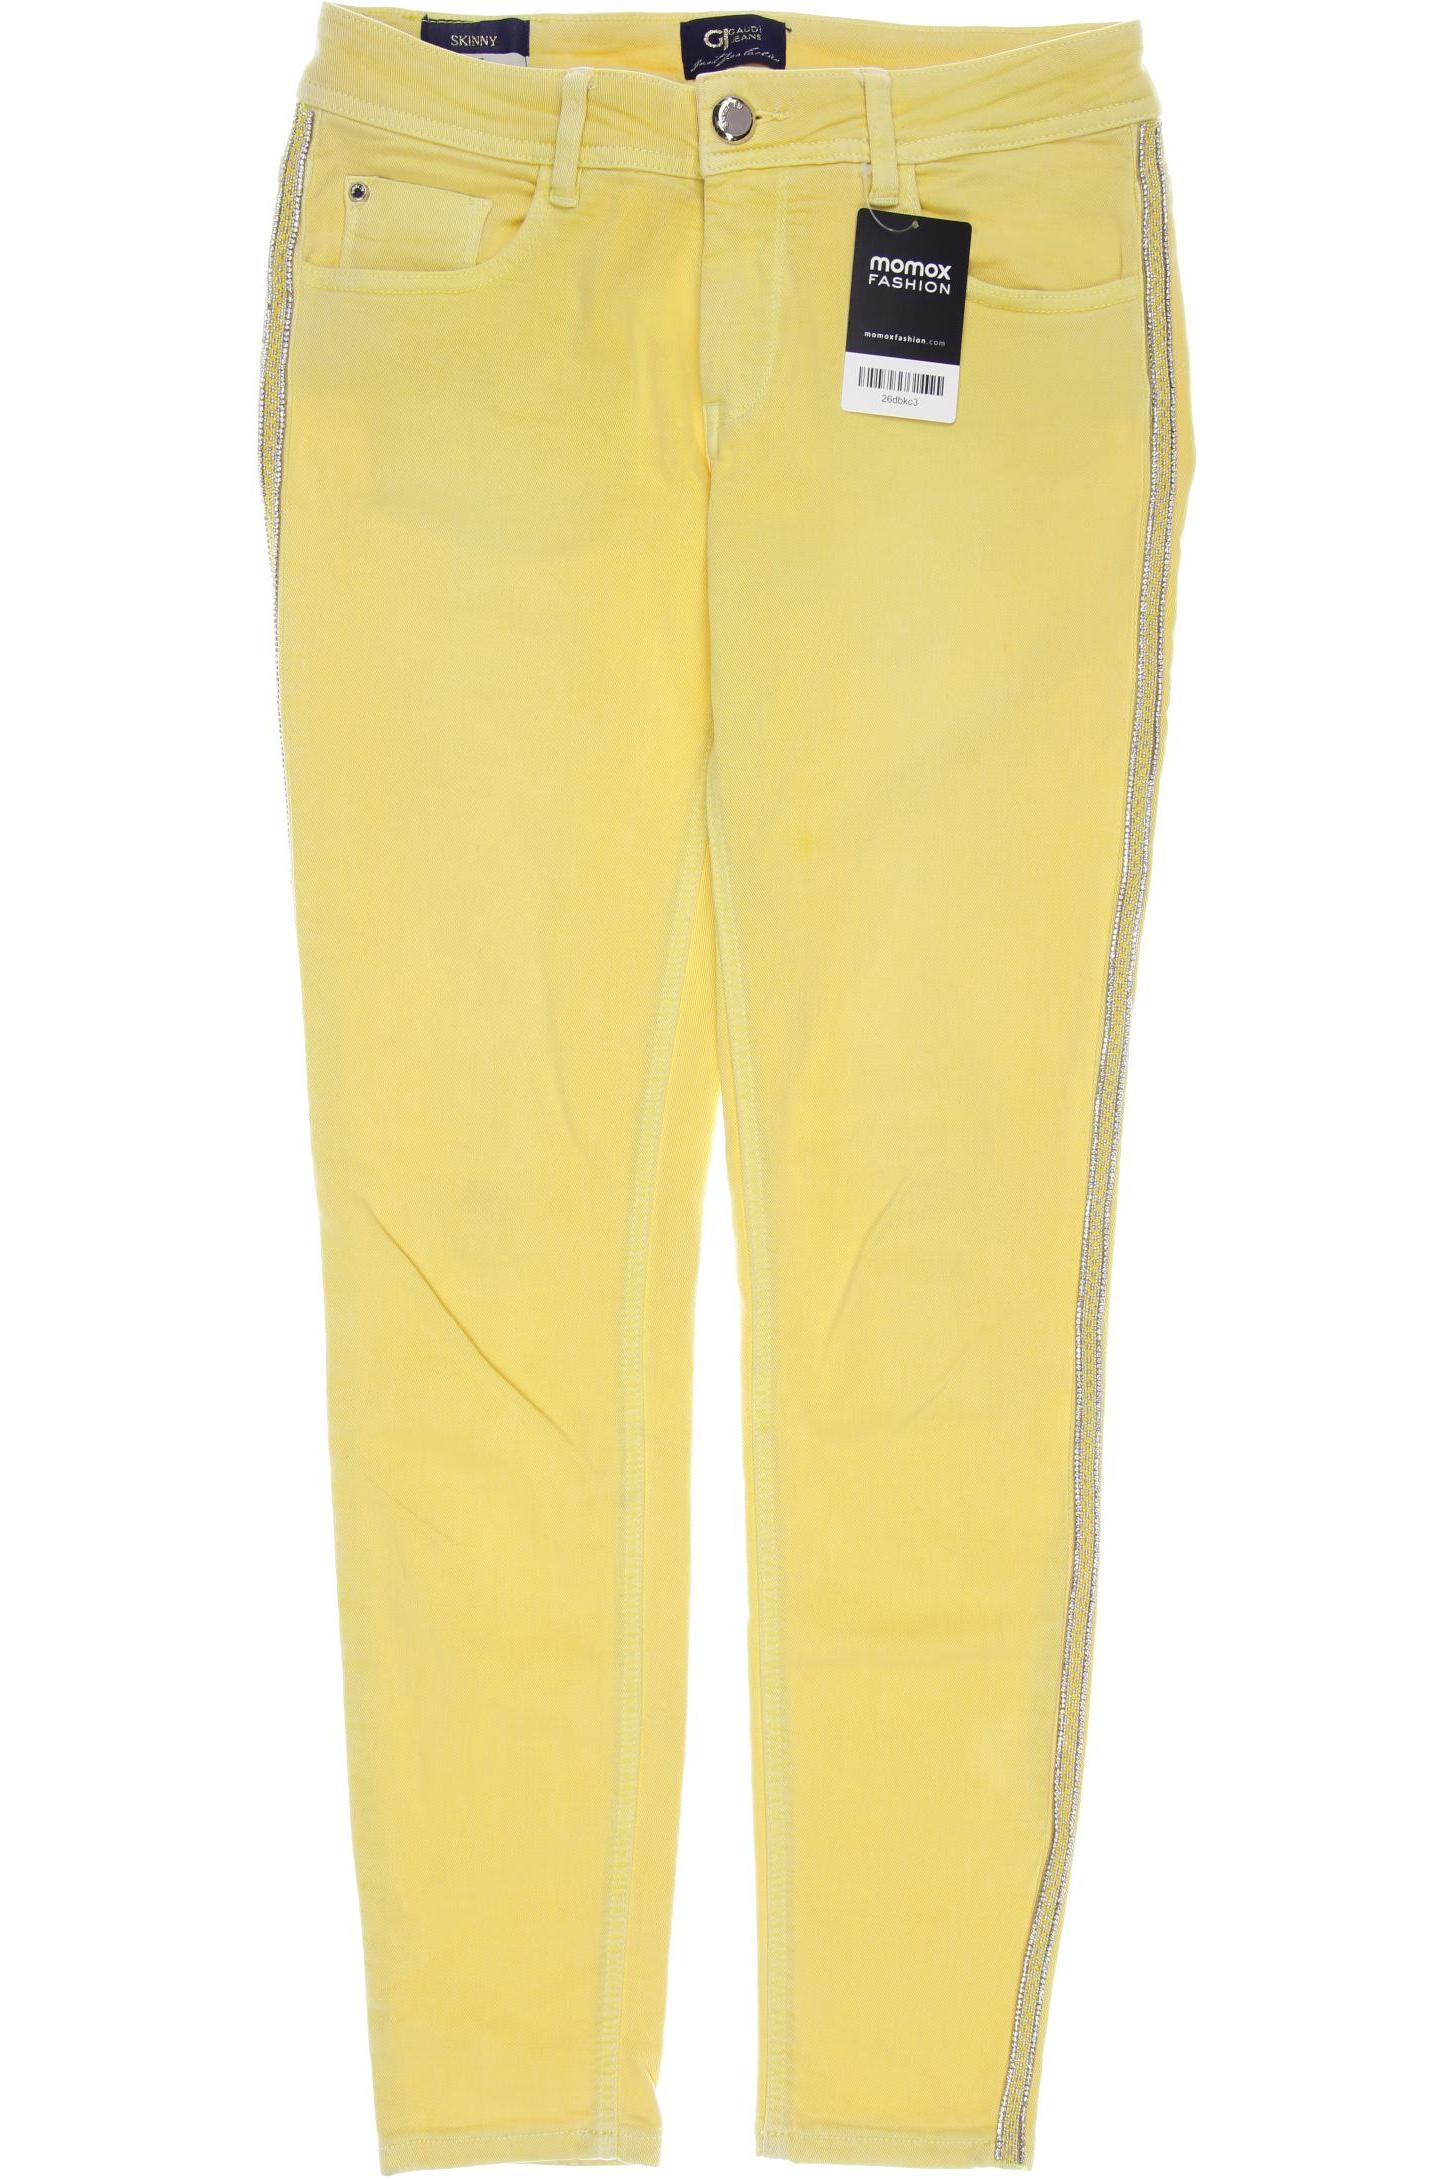 Gaudi Damen Jeans, gelb von Gaudi